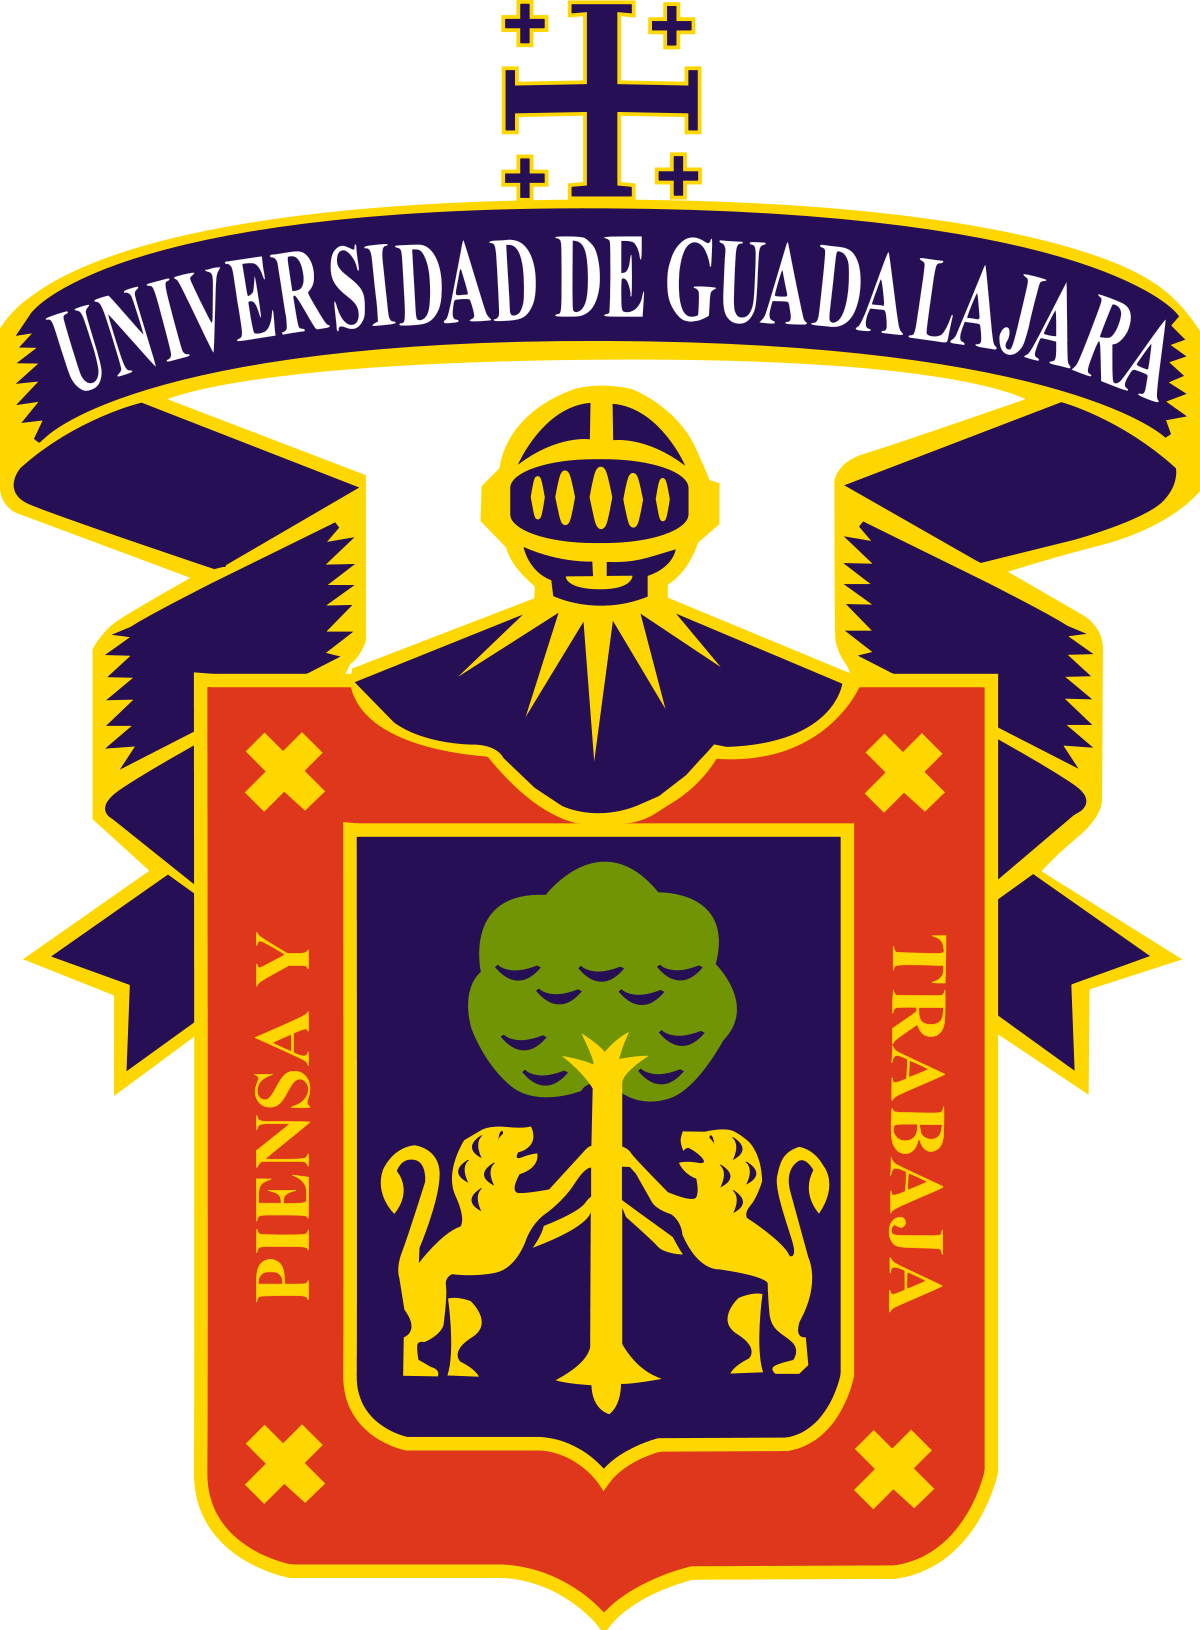 Universidad de gudalajara